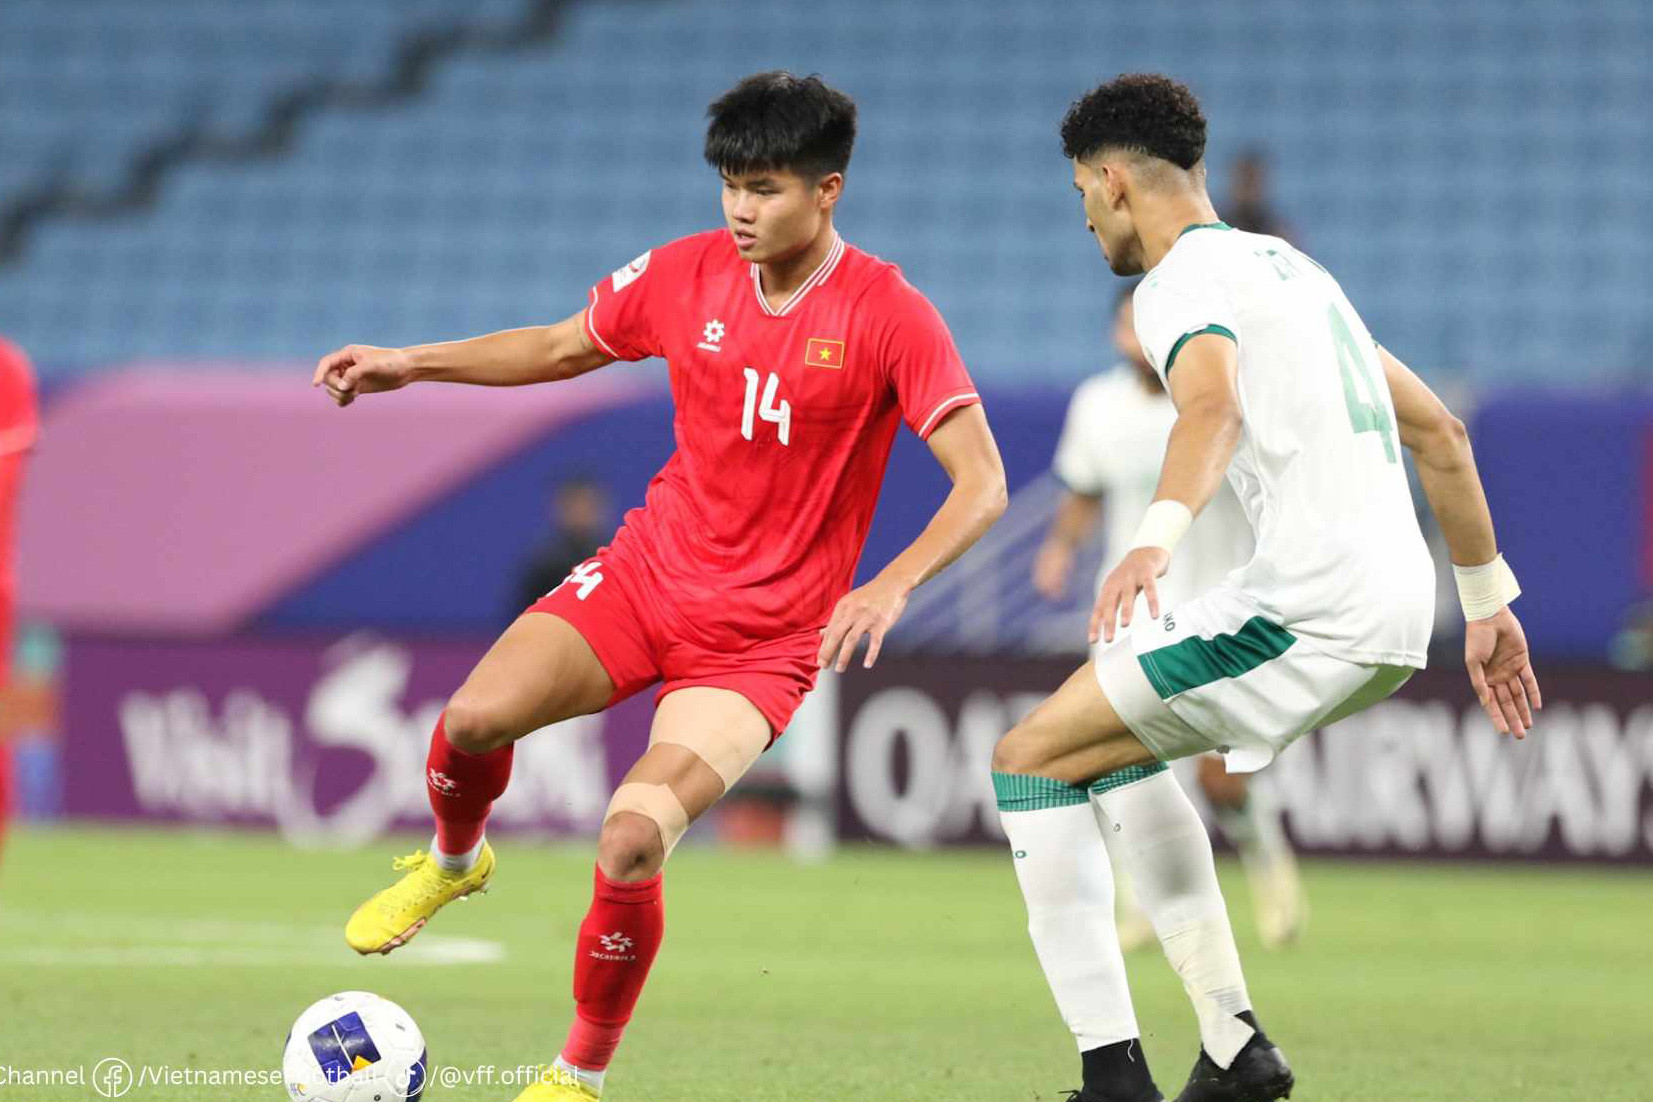  Trực tiếp bóng đá U23 Việt Nam 0-0 U23 Iraq: Văn Trường, Văn Tùng bỏ lỡ